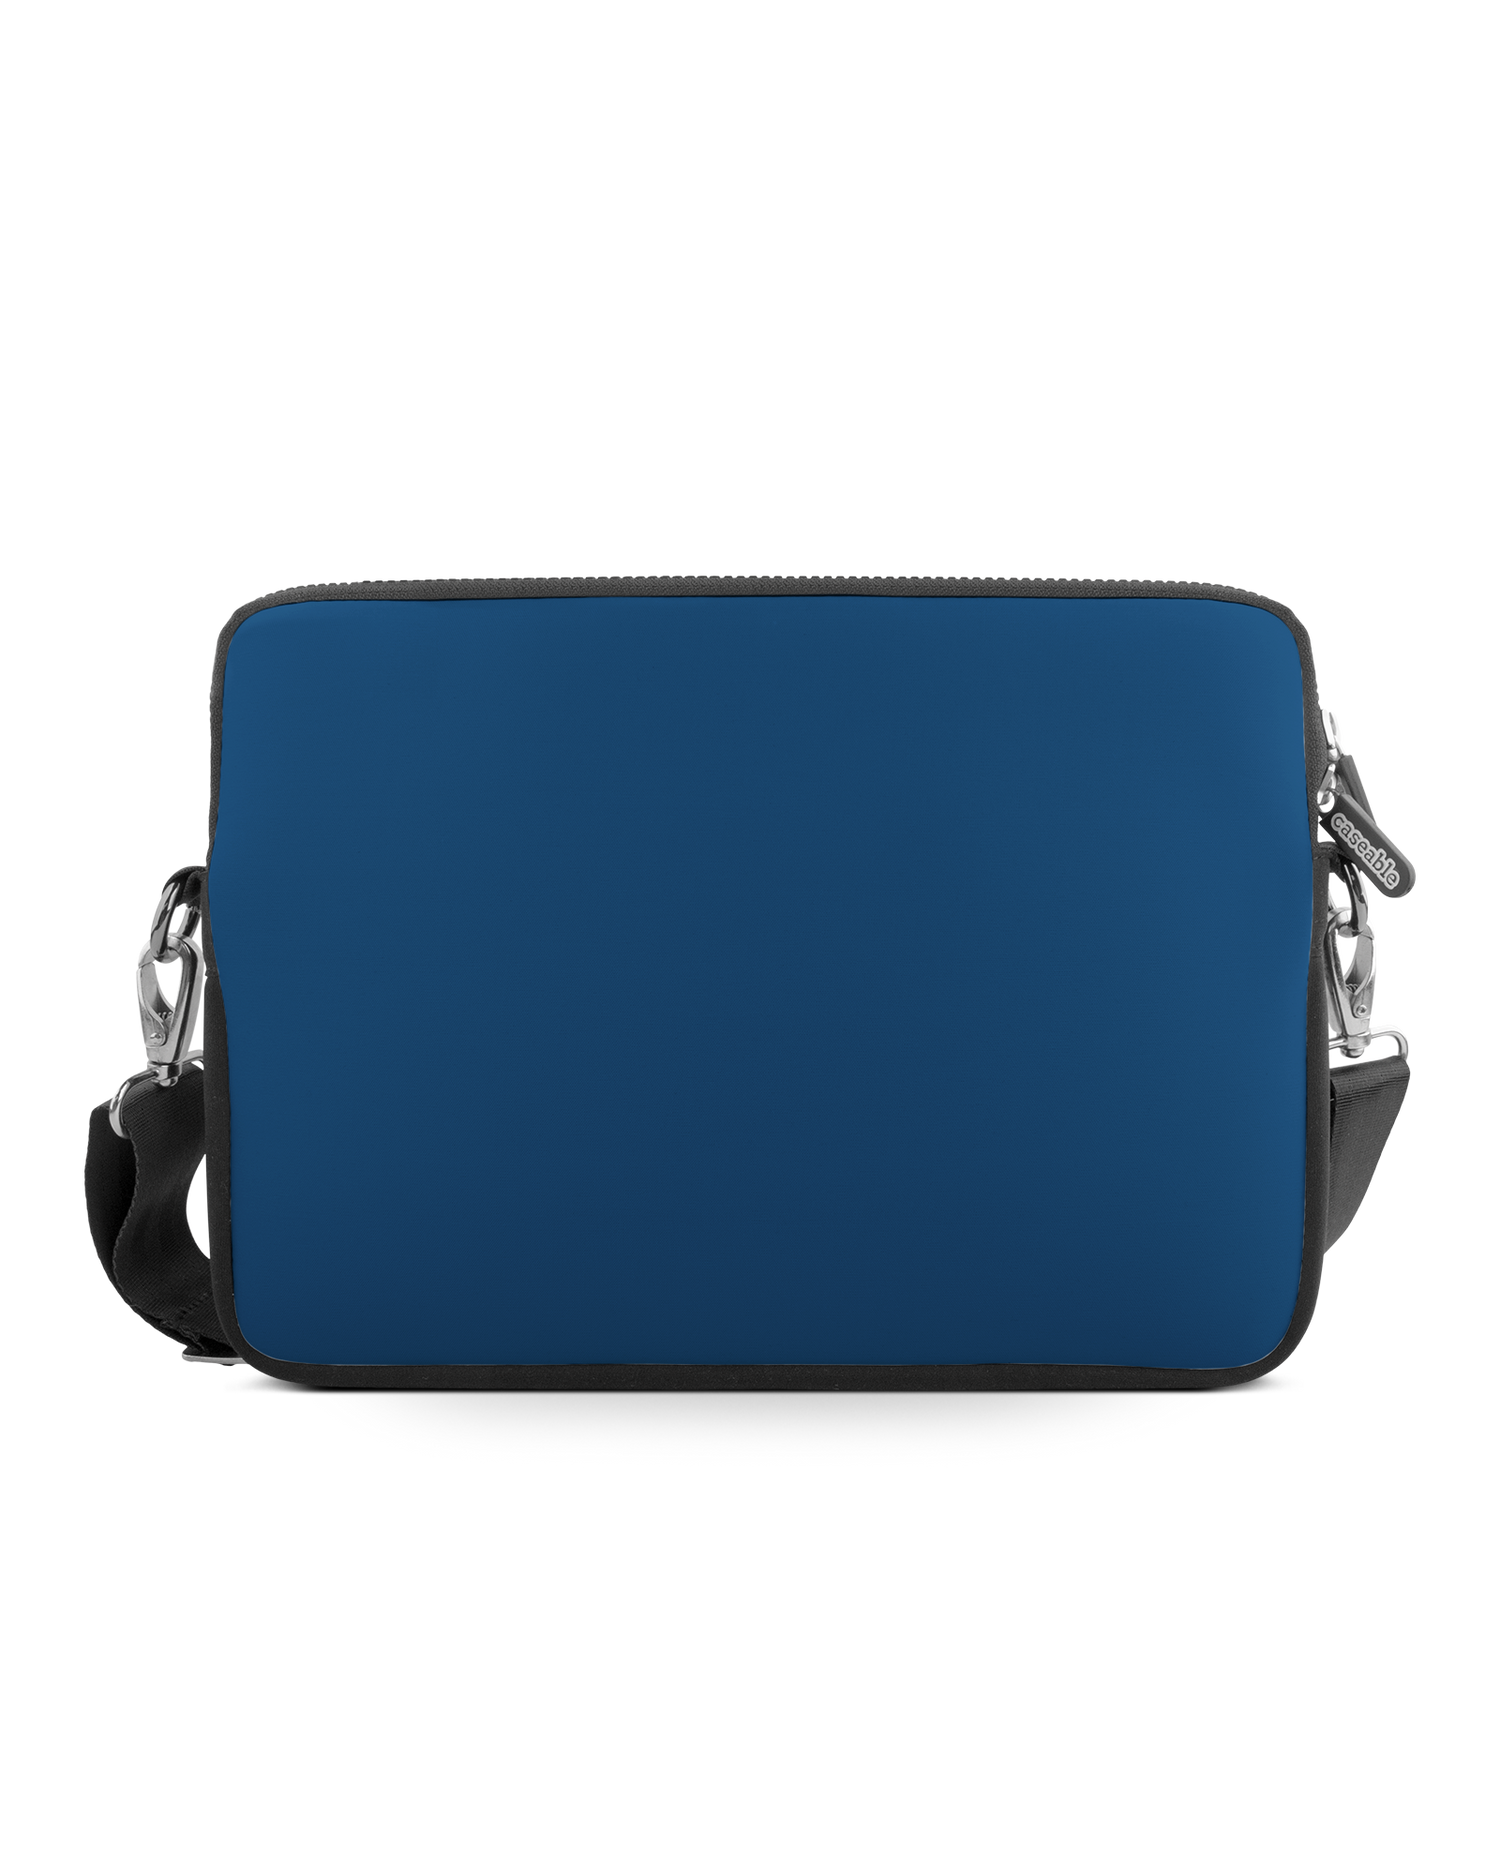 CLASSIC BLUE Premium Laptoptasche 13 Zoll: Vorderansicht